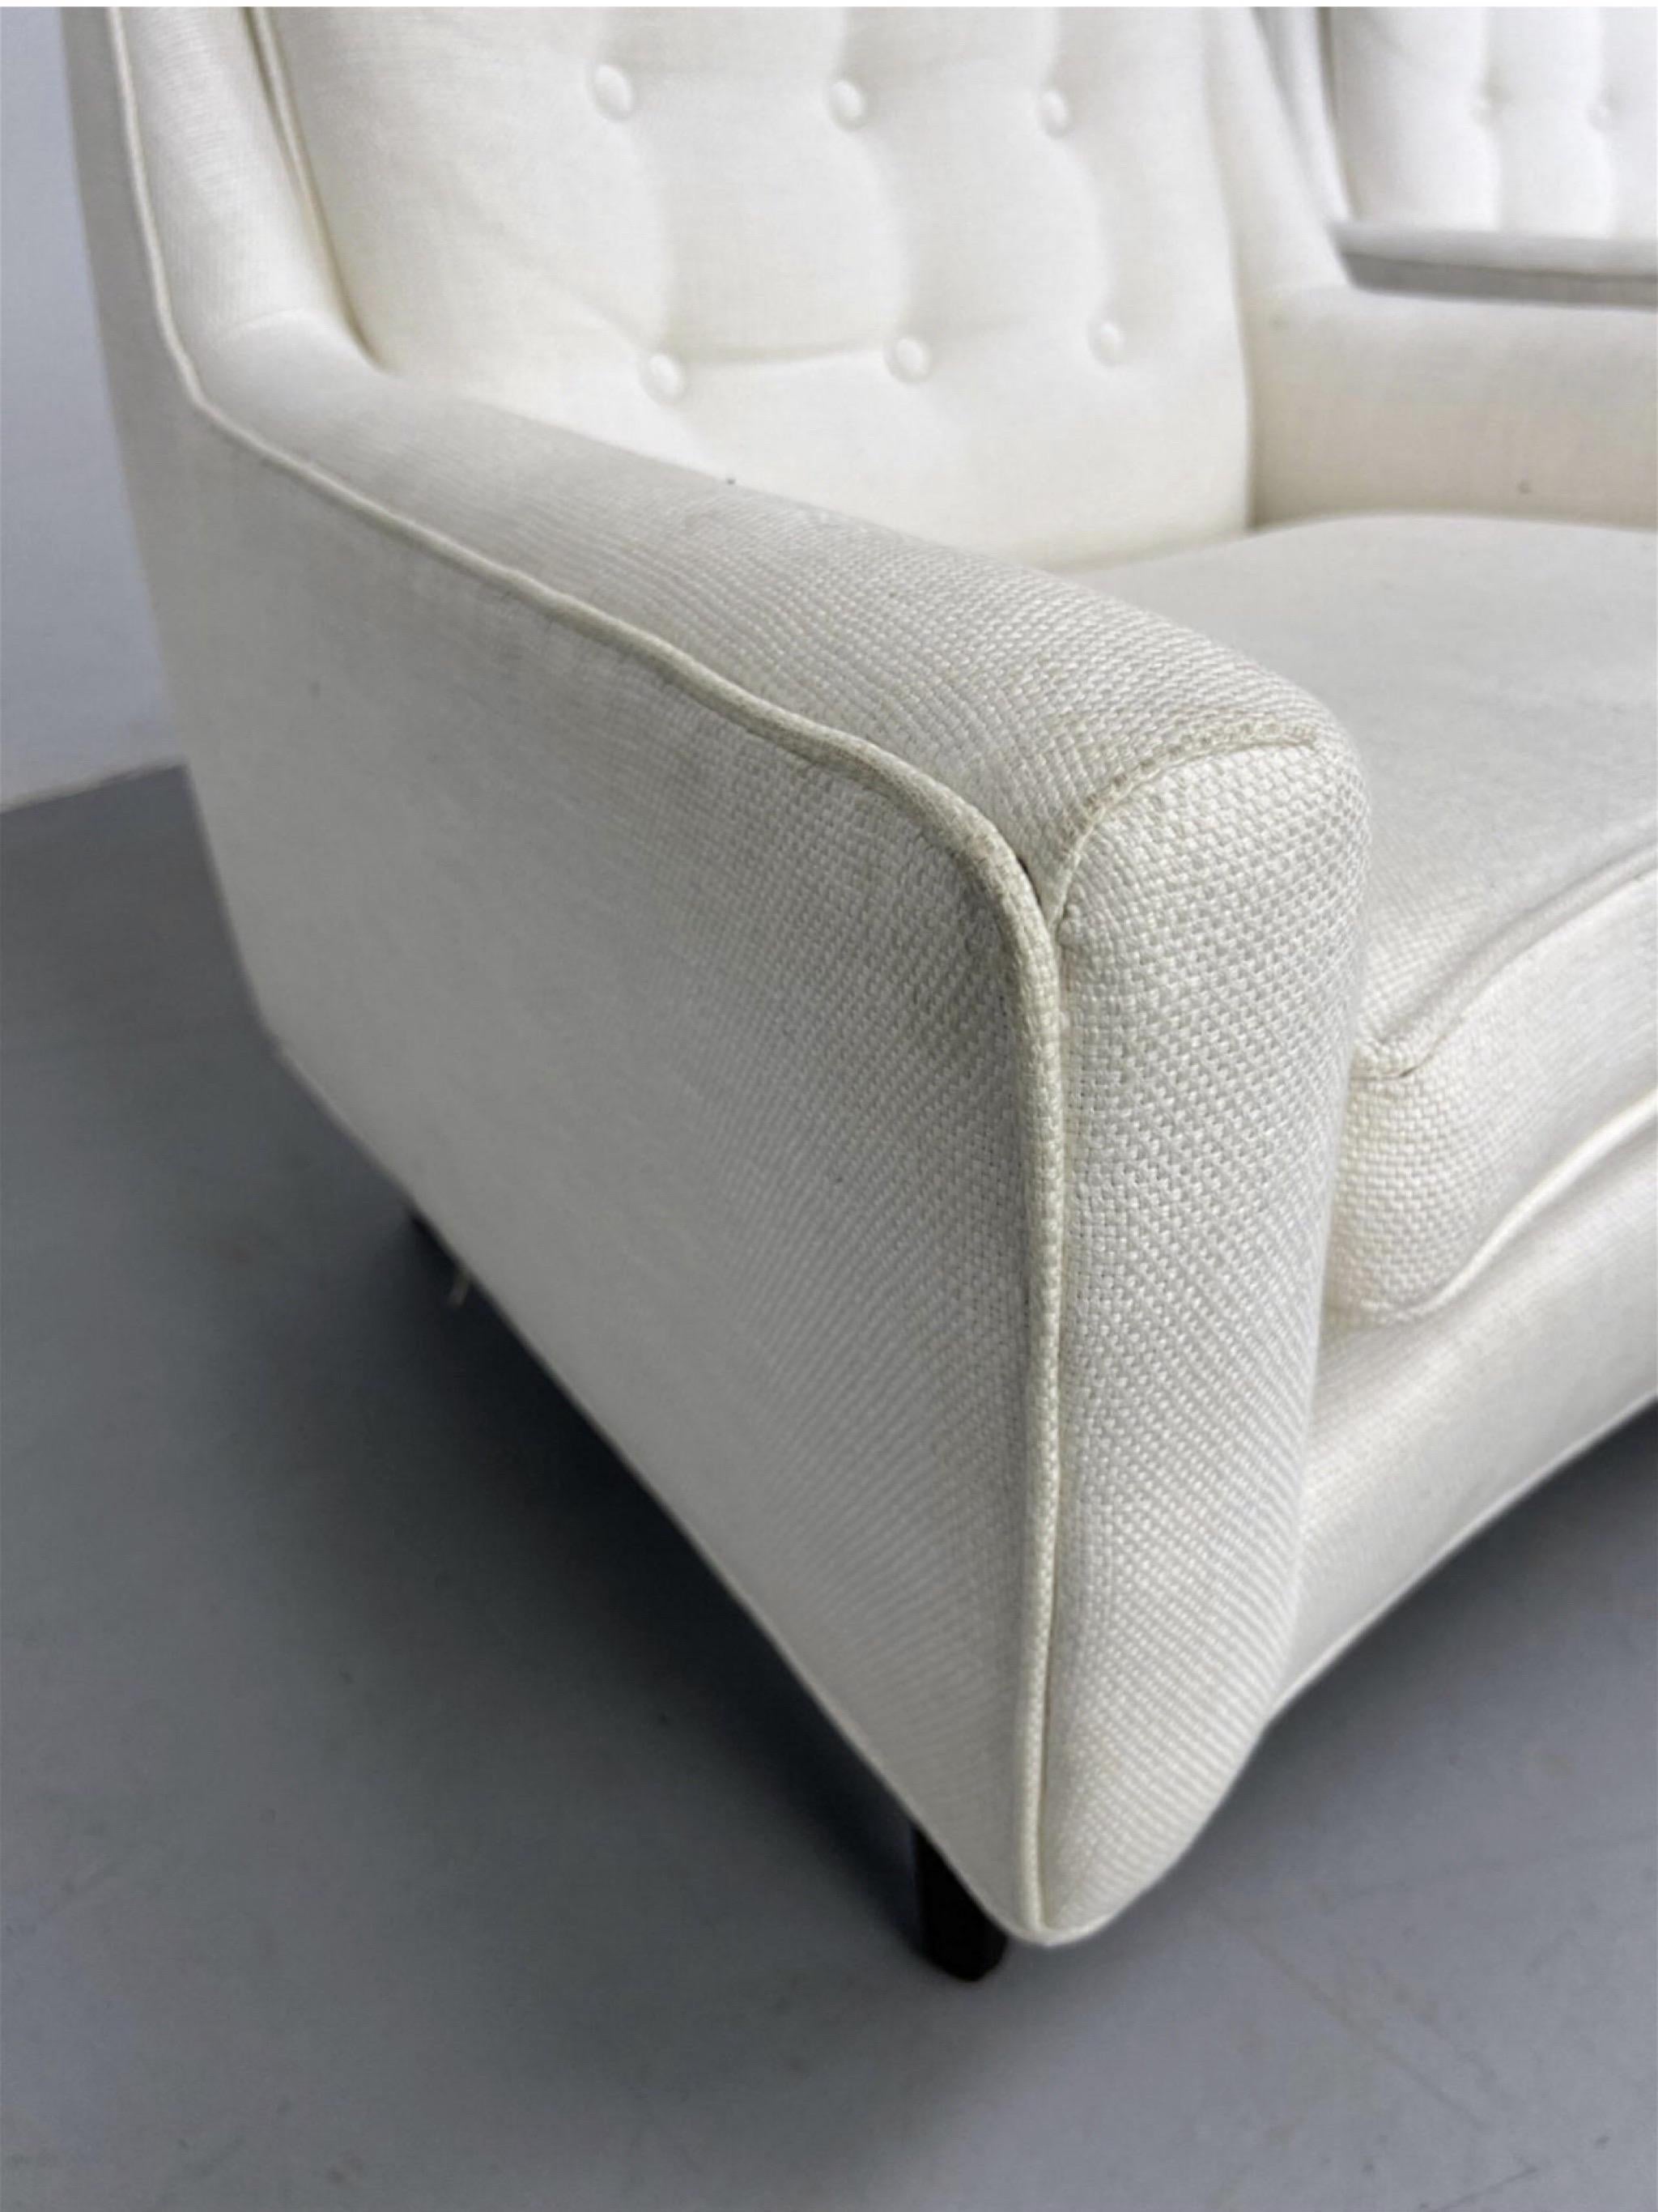 Edward Wormley zugeschriebene weiße gepolsterte Lounge-Stühle - ein Paar (Polster)